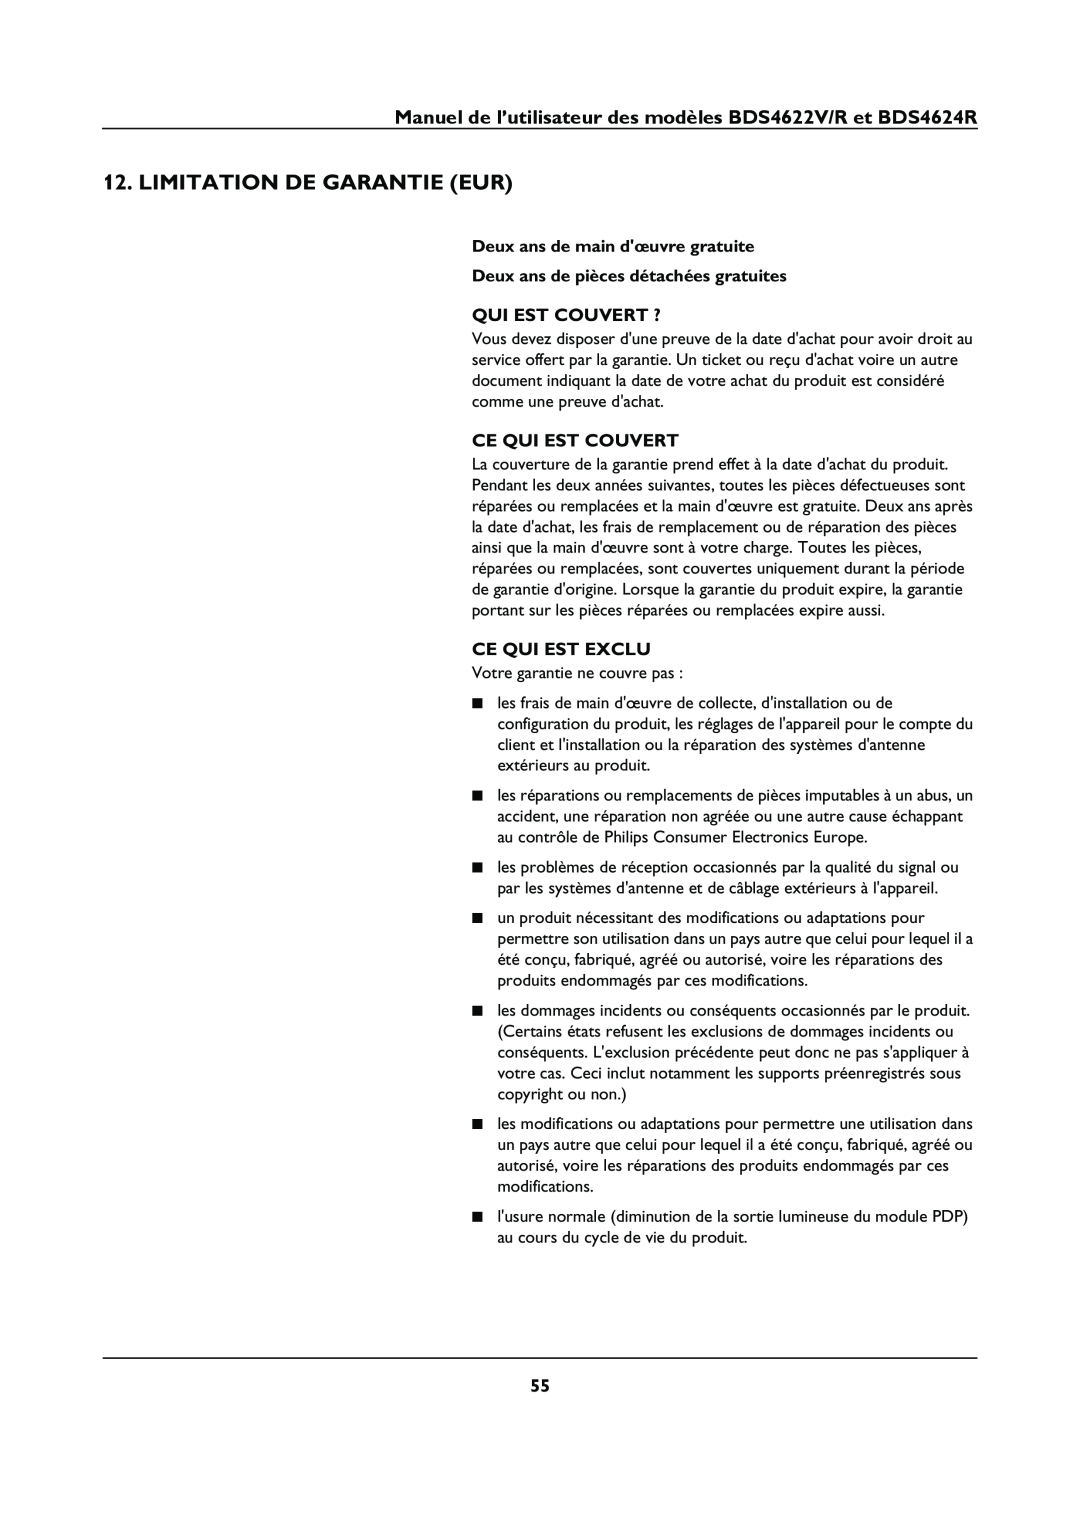 Philips BDS4622V manual Limitation De Garantie Eur, Deux ans de main dœuvre gratuite, Ce Qui Est Couvert, Ce Qui Est Exclu 